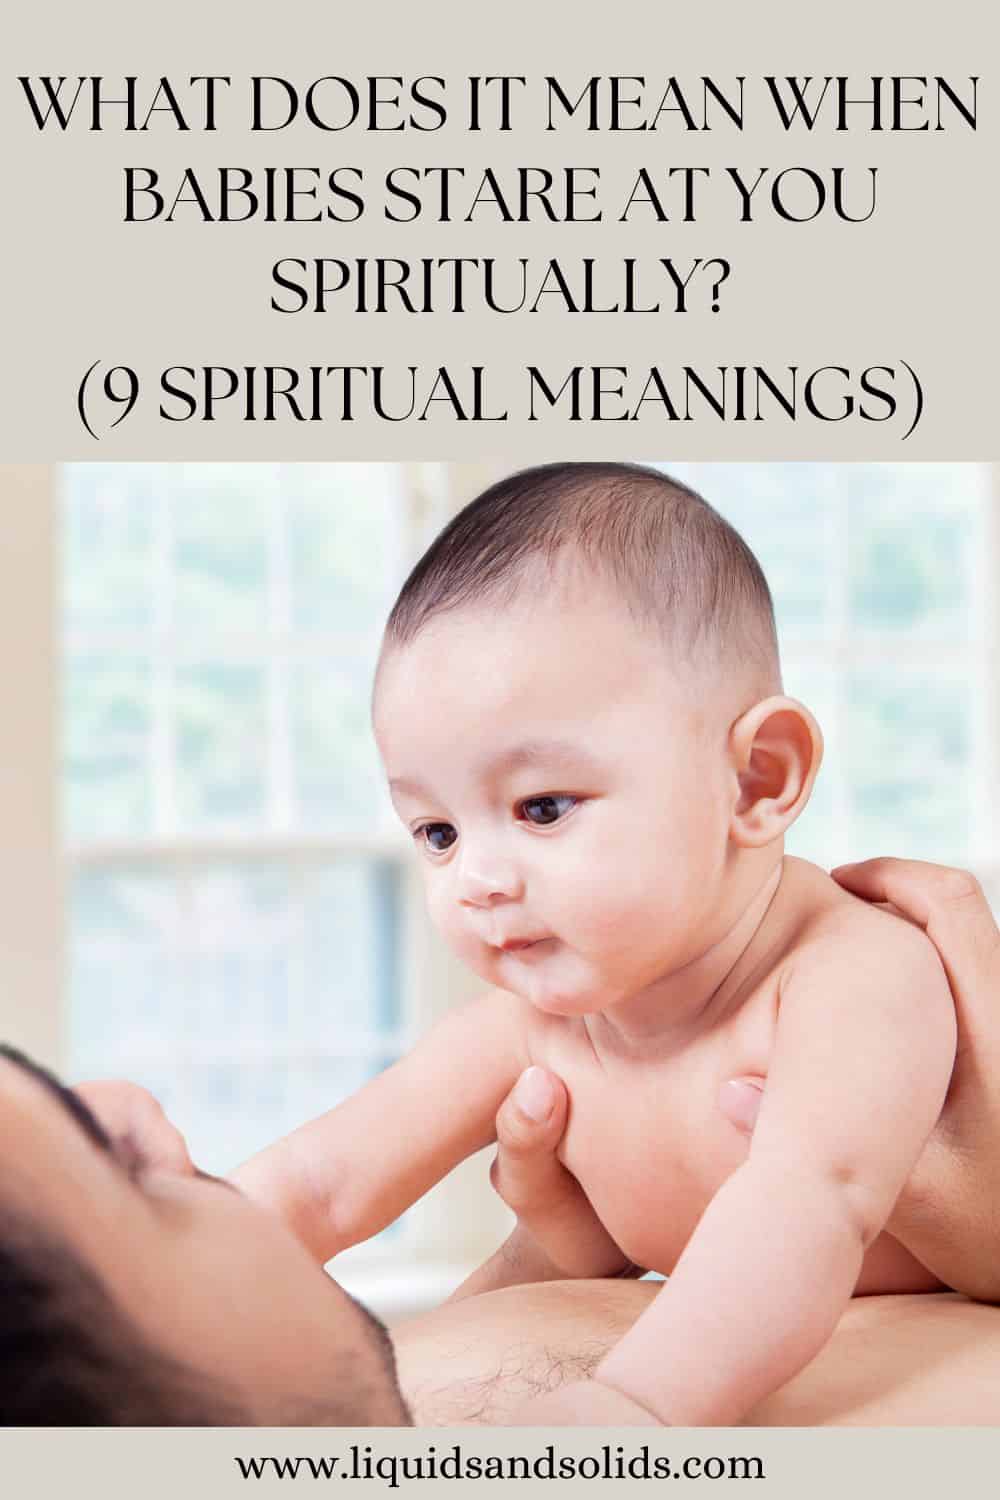  ماذا يعني أن يحدق الأطفال فيك روحياً؟ (9 معاني روحية)